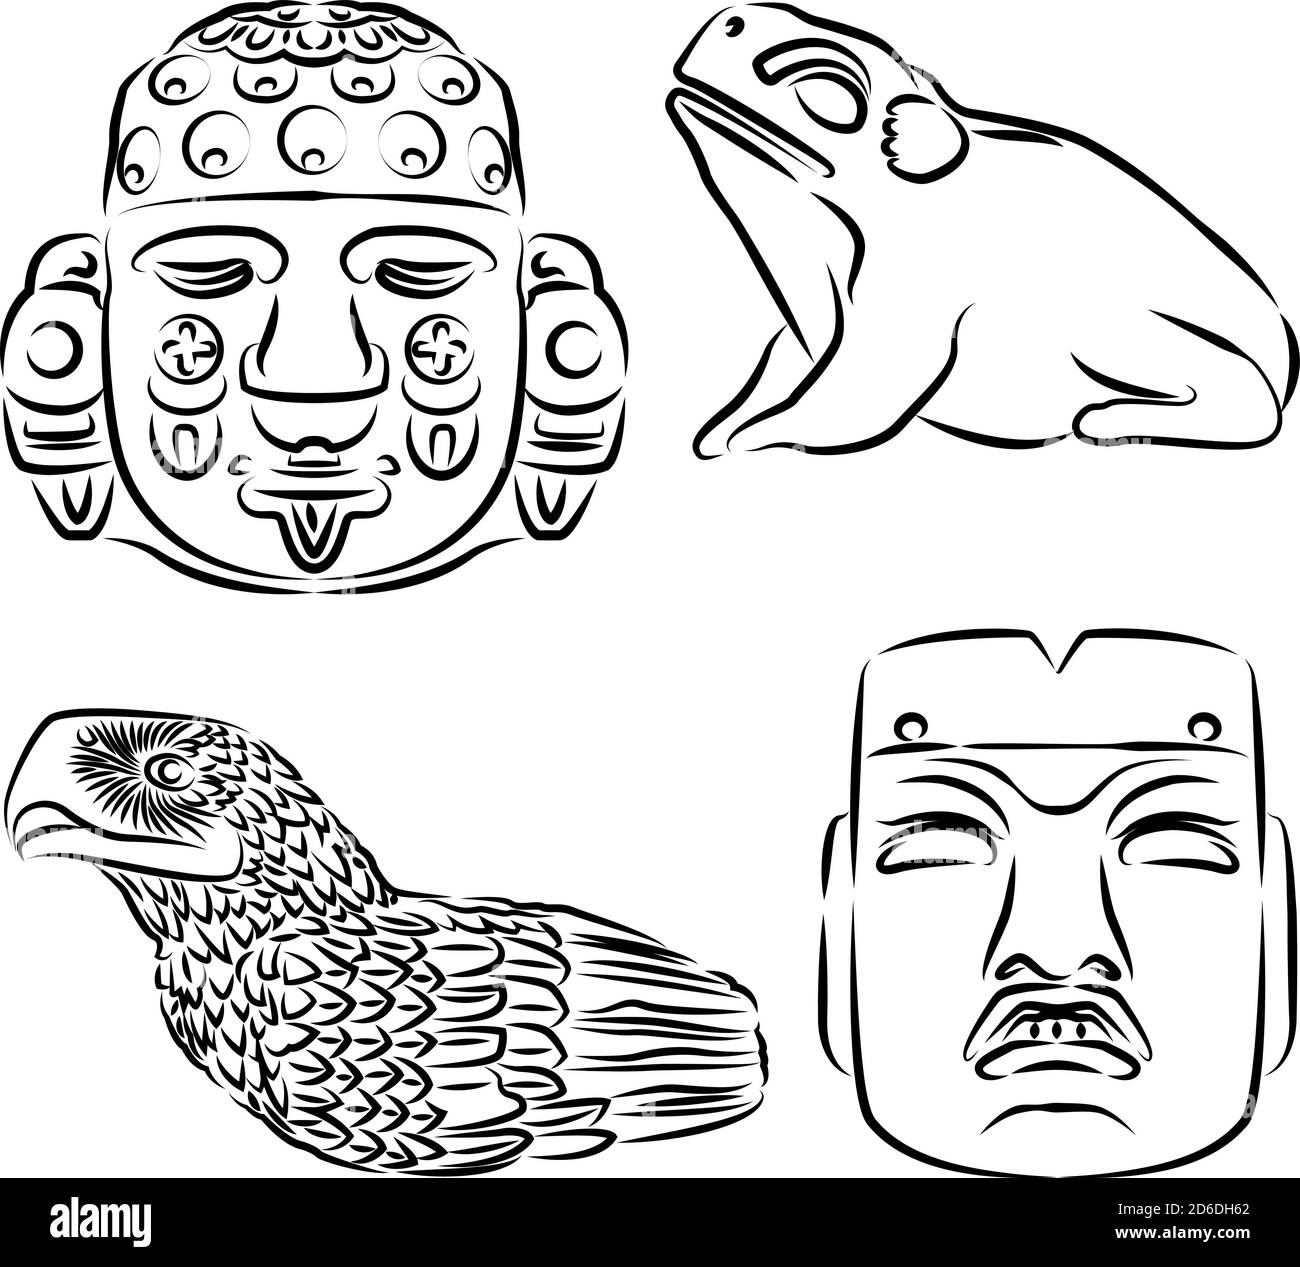 Disegni di dettagli artistici del tempio azteco maggiore di Città del Messico, illustrazione vettoriale Illustrazione Vettoriale